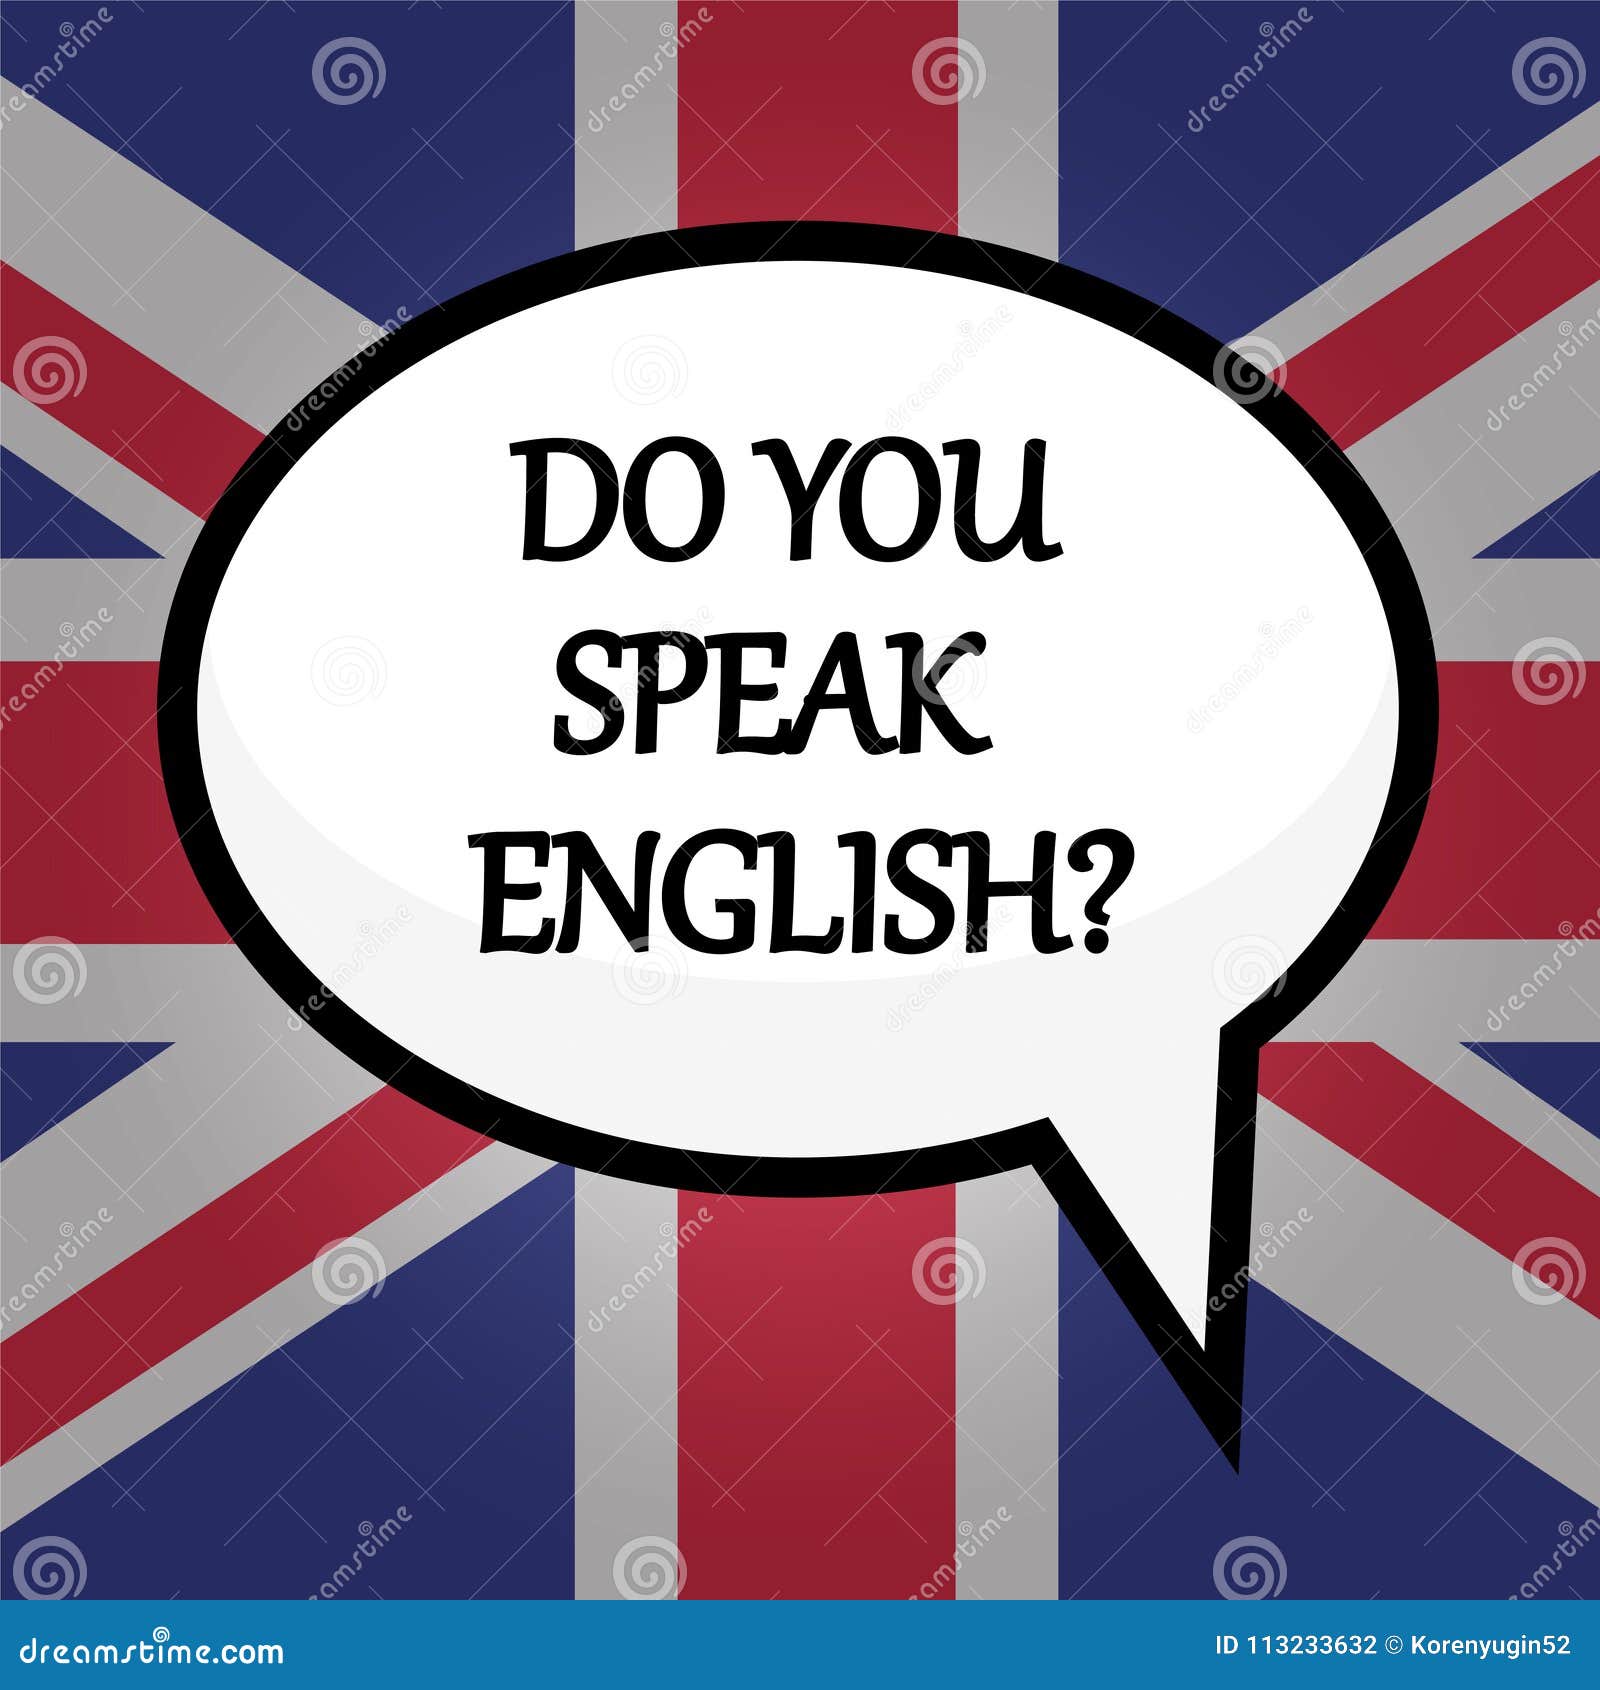 Do you speak good english. Do you speak English. Let's speak English. Speak English надпись. Плакат do you speak English.